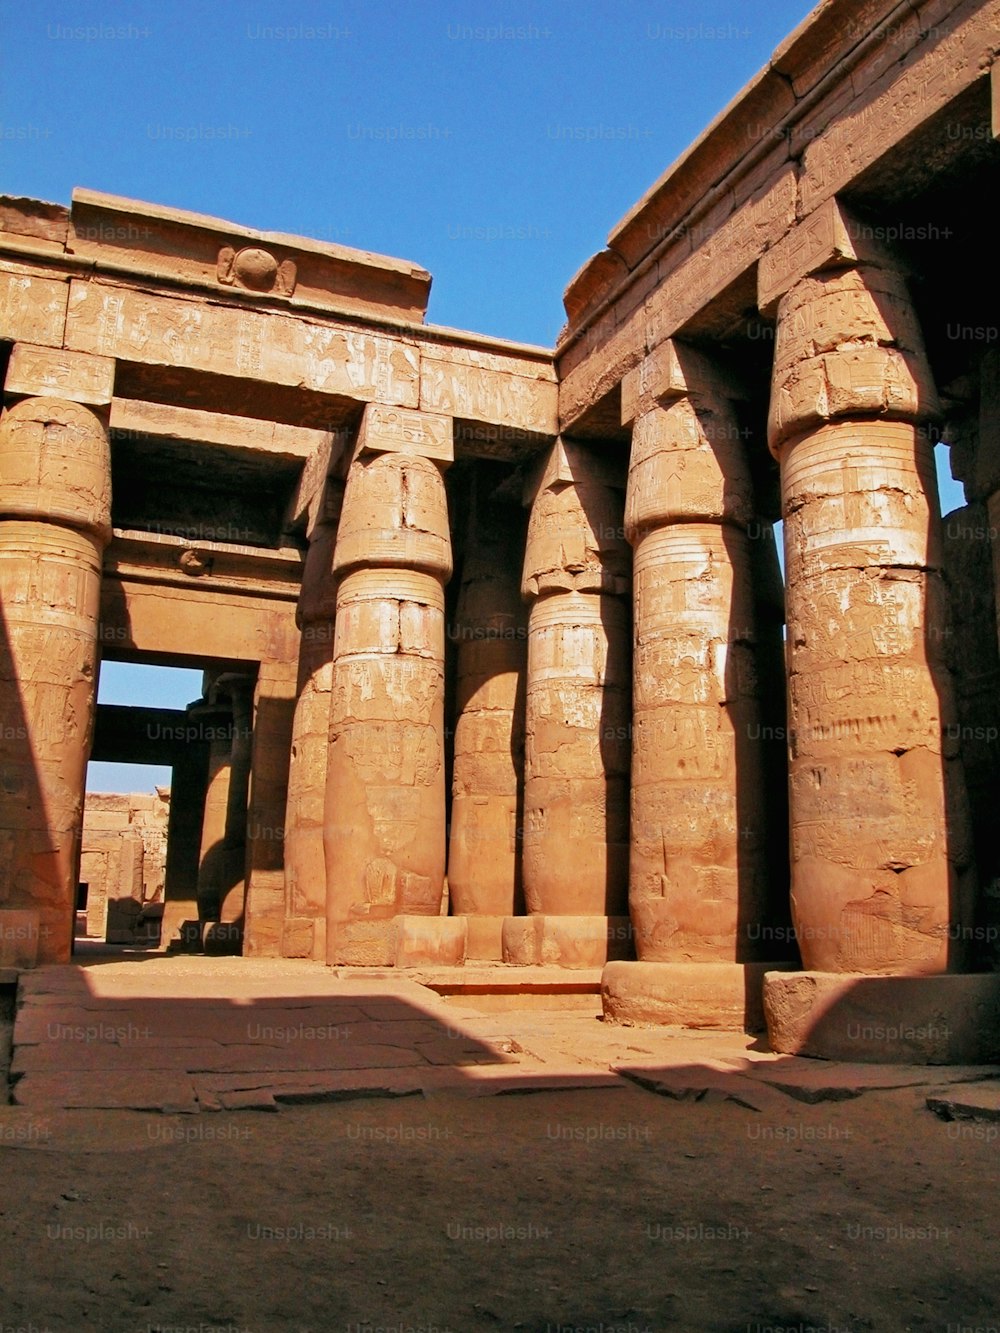 Ein Bild eines alten Gebäudes mit Säulen